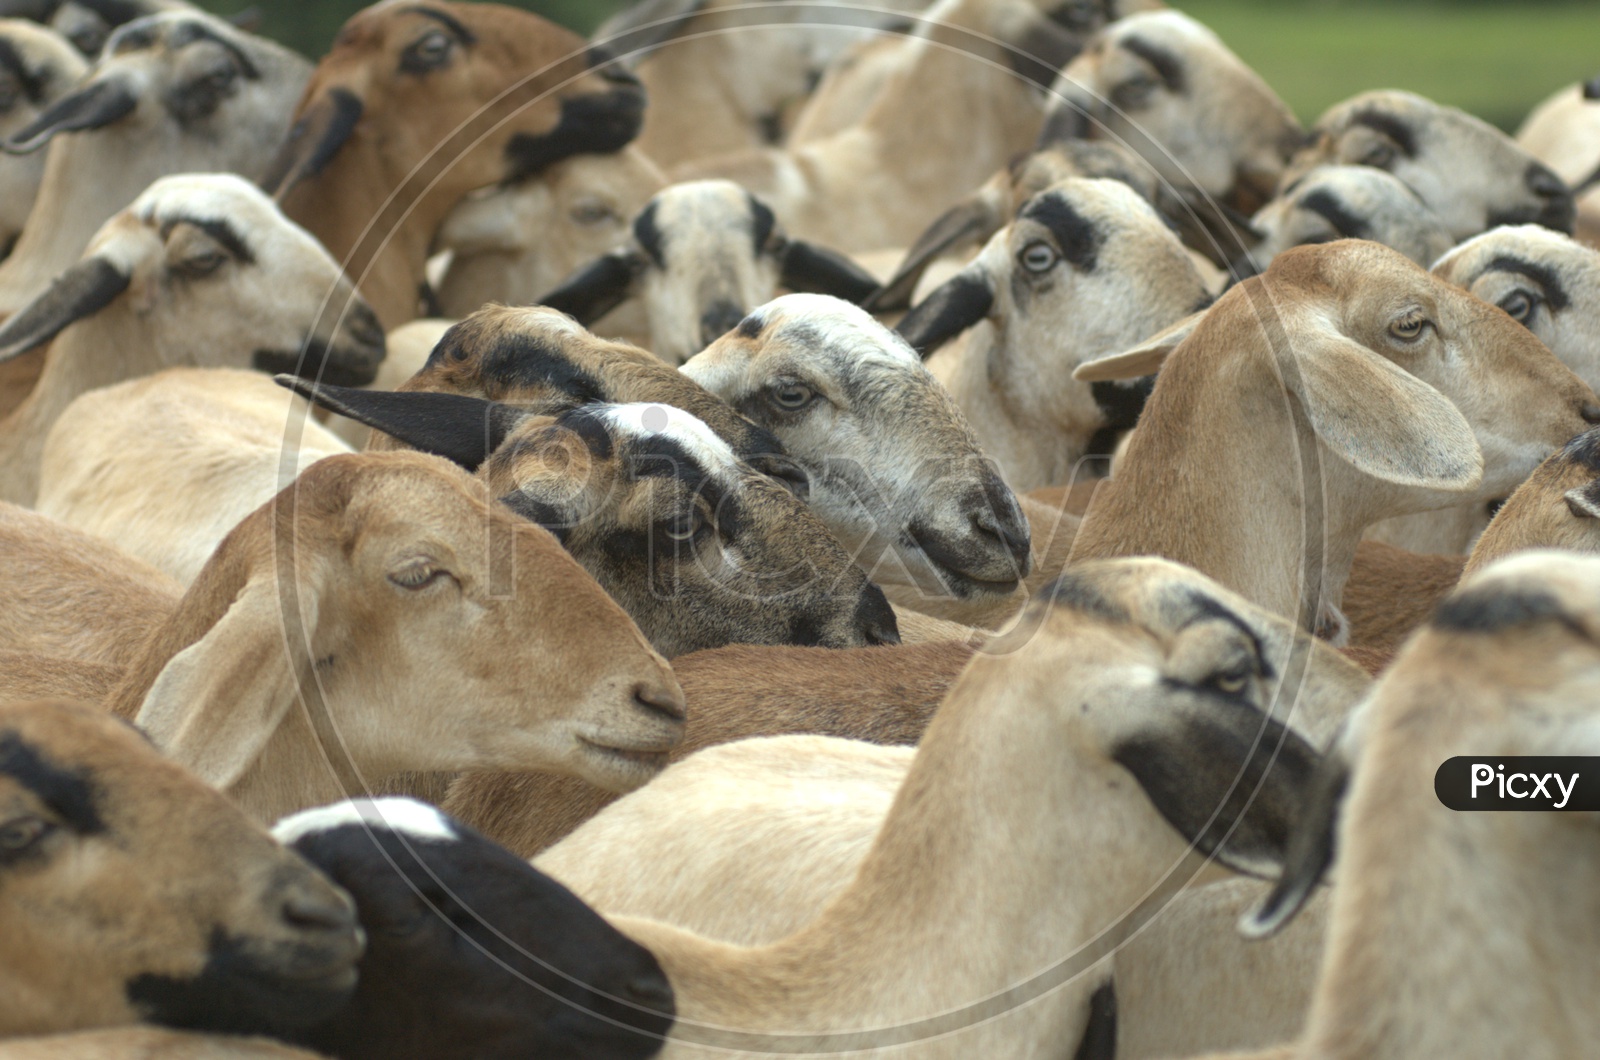 A herd of goats